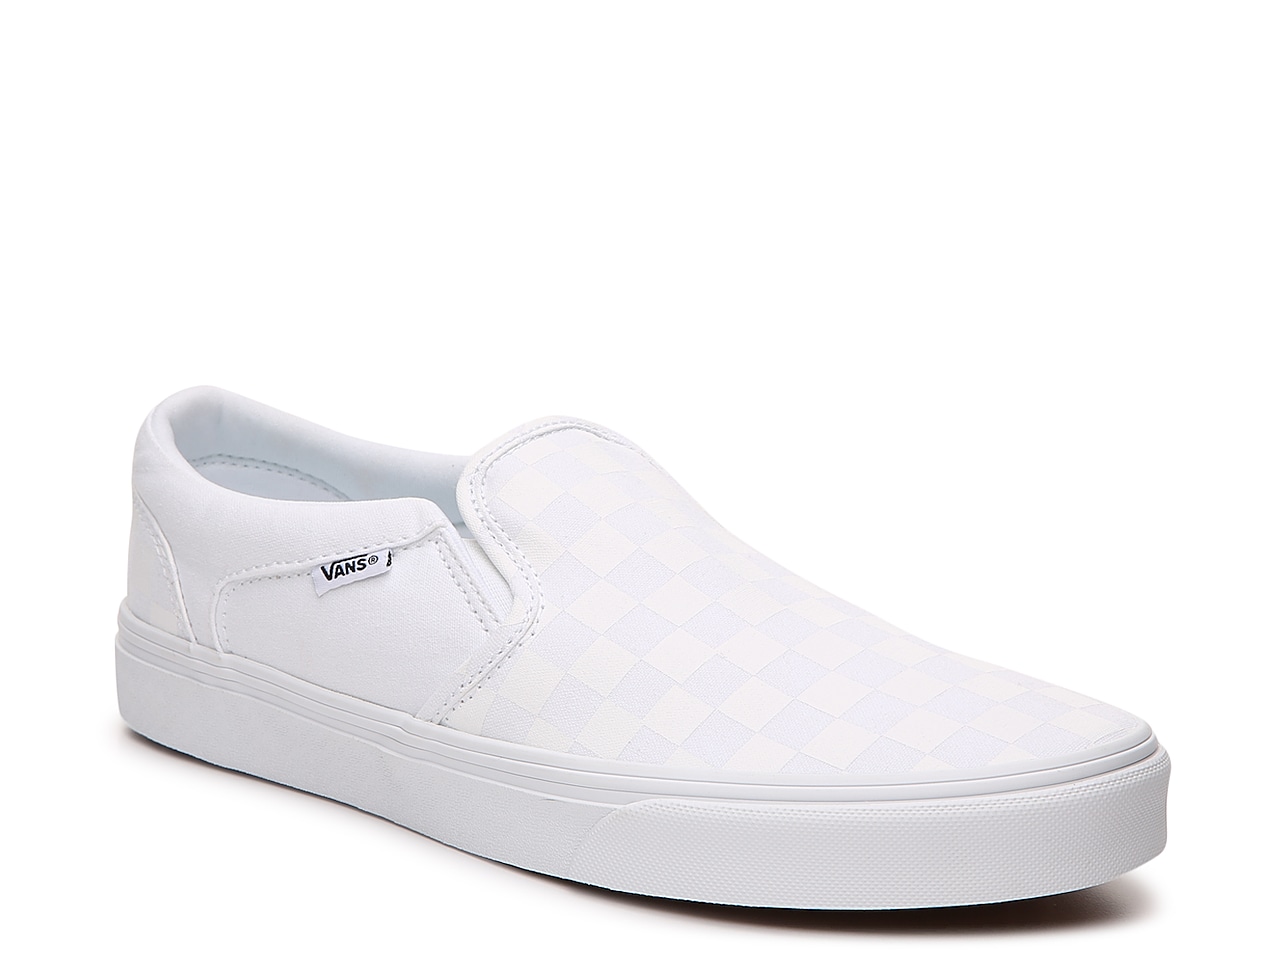 Vans Asher Checkered Slip-On Sneaker - Men's